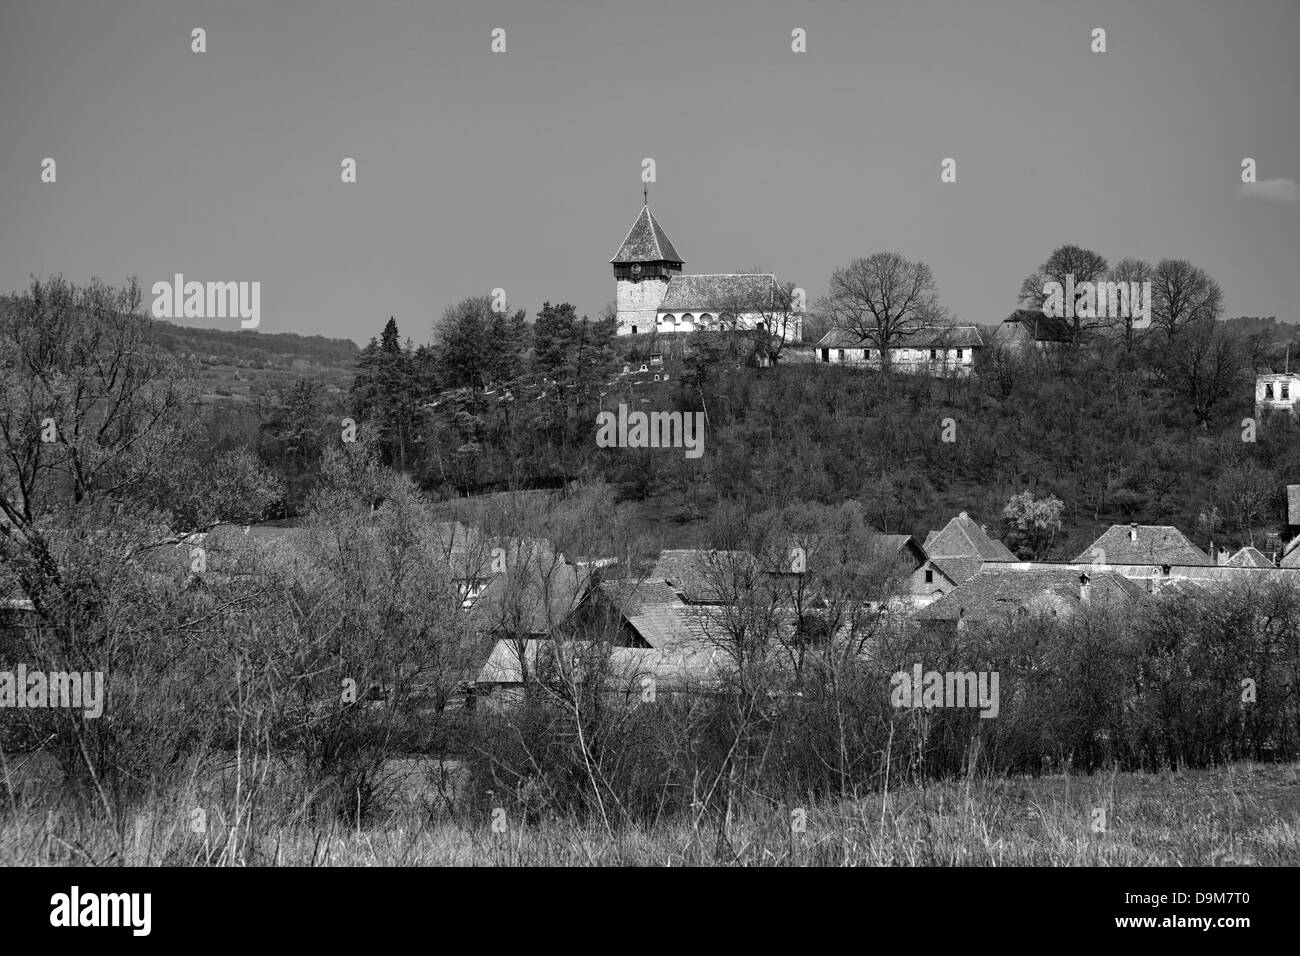 Visualizzazione bianco e nero del villaggio della Transilvania di Rodbav con la chiesa sulla collina, Romania. Foto Stock